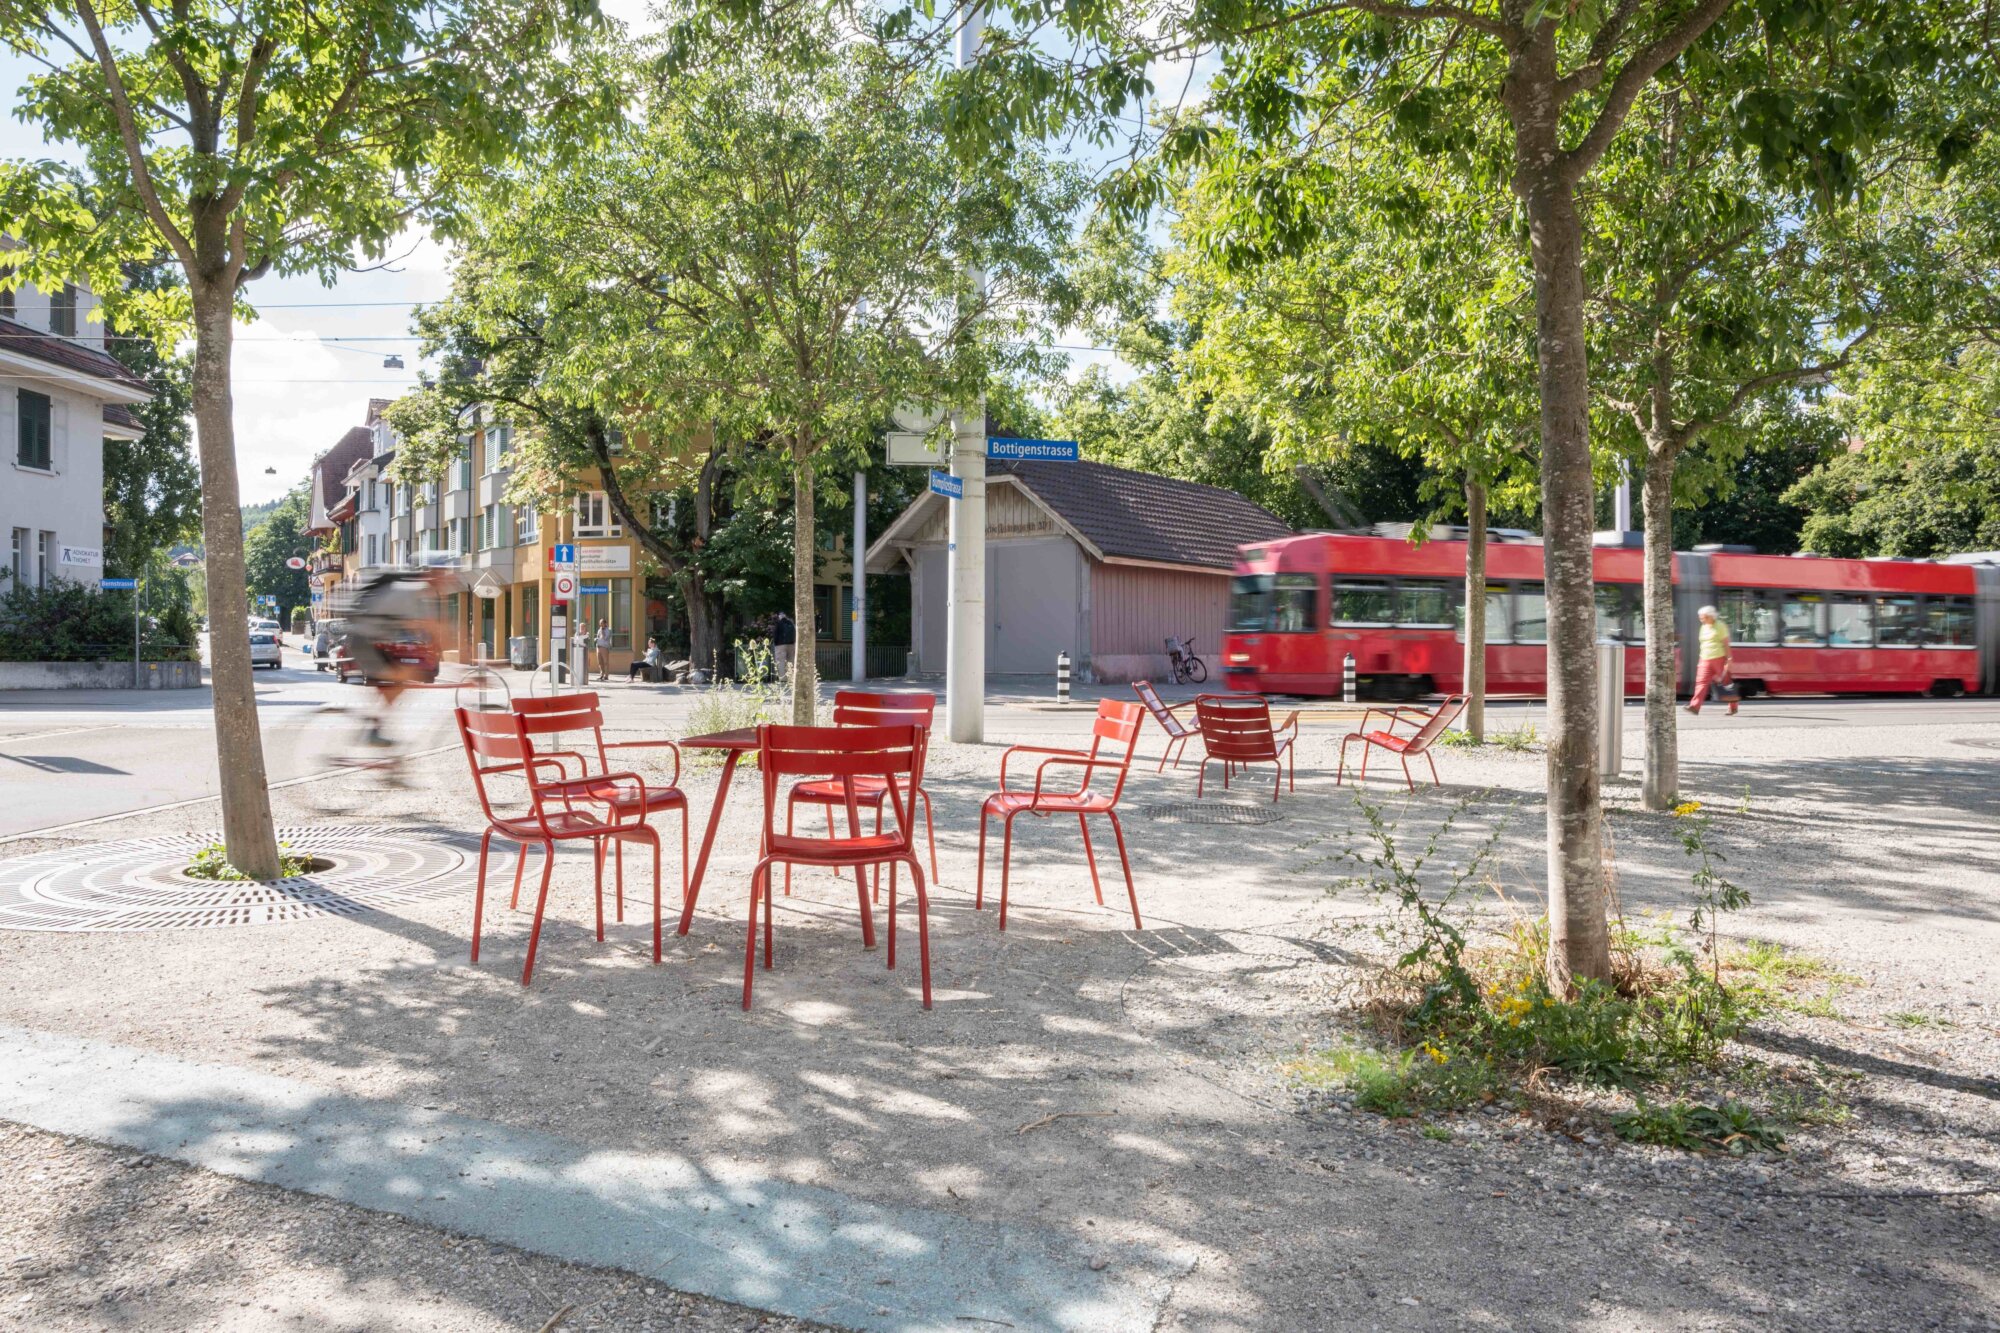 2021 erstellte Schattenplätze mit grosszügig entsiegelten Flächen unter hitzebeständigen Bäumen in der Fussgängerzone Bümpliz. Foto: © Stefanie Würsch